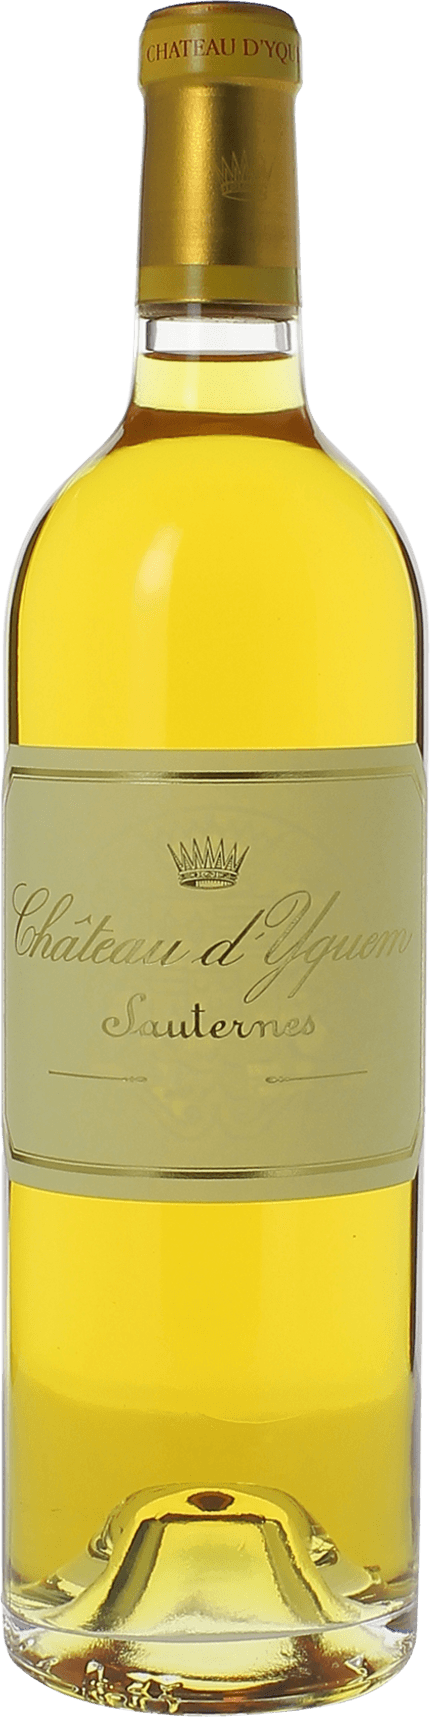 Yquem (disponible en dcembre 2019) 2017 1er Grand cru class Sauternes, Bordeaux blanc